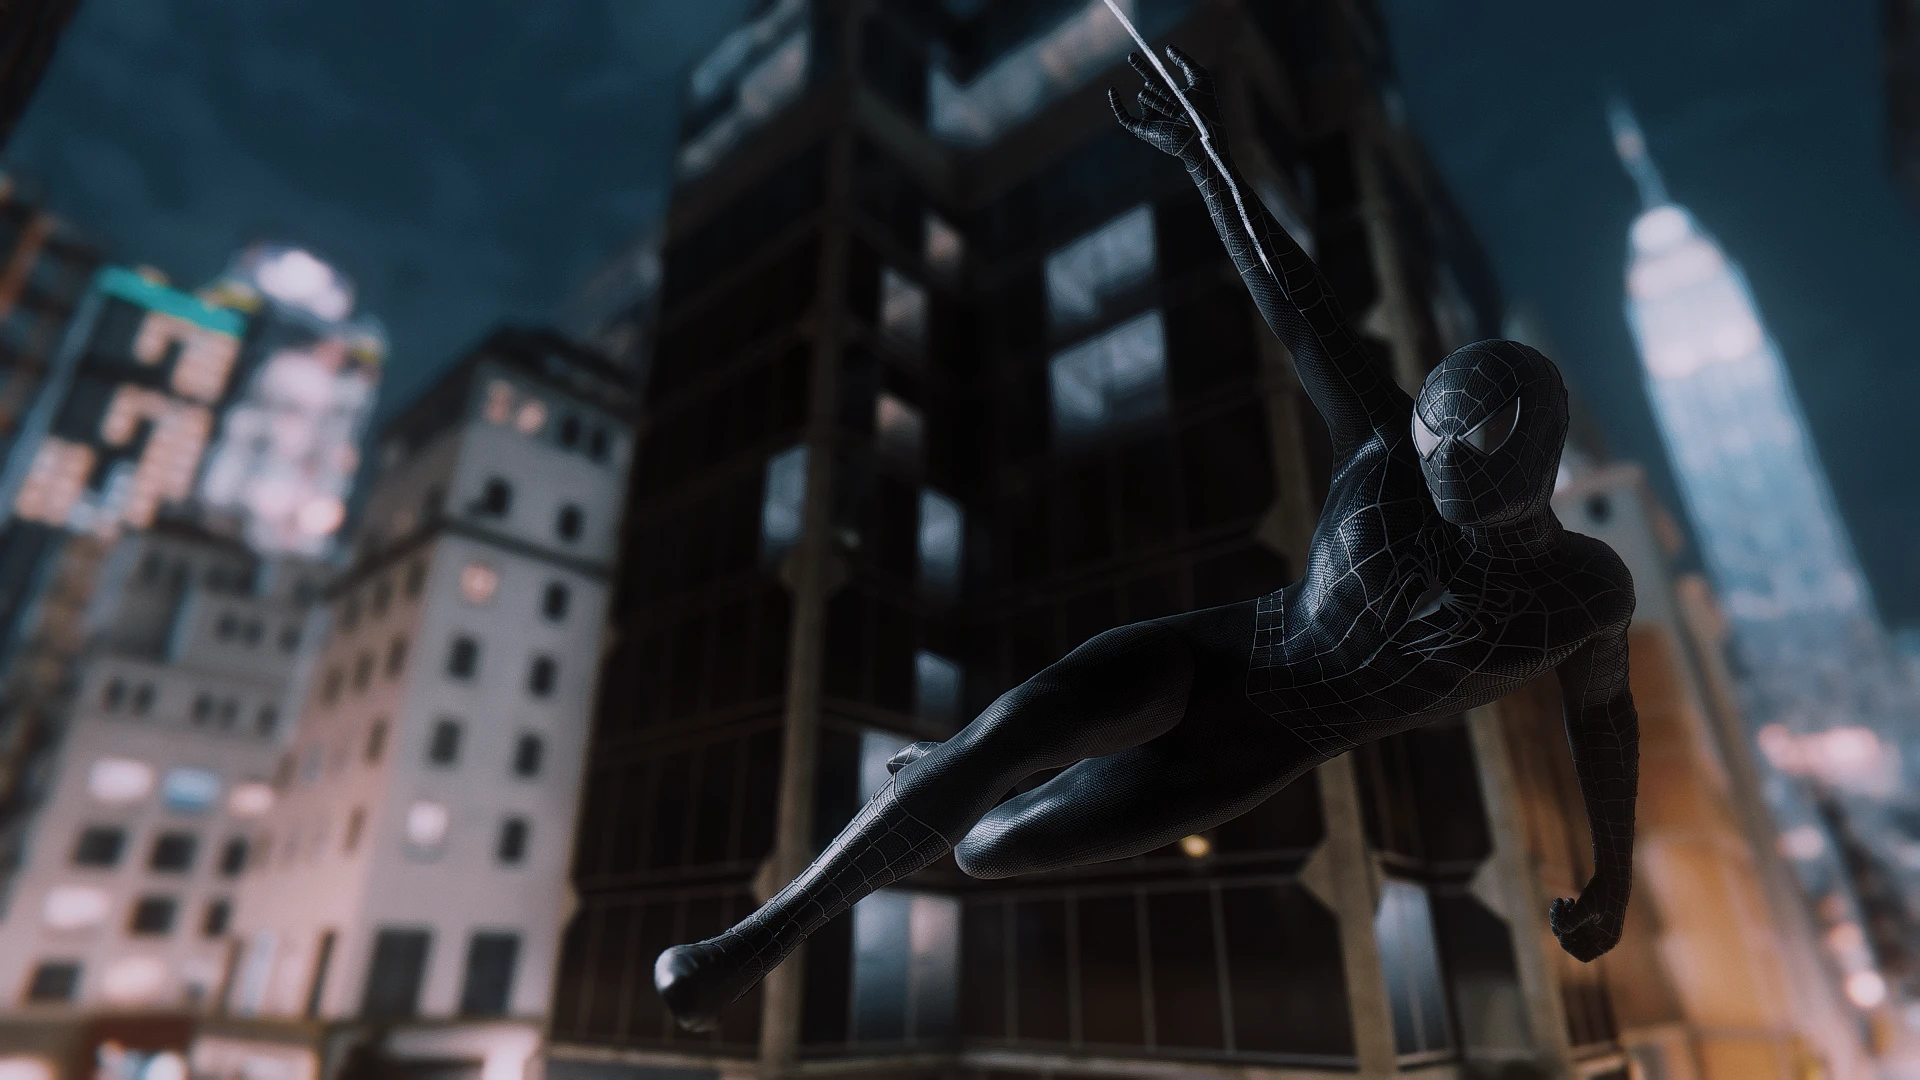 Spider-Man 3, SM3